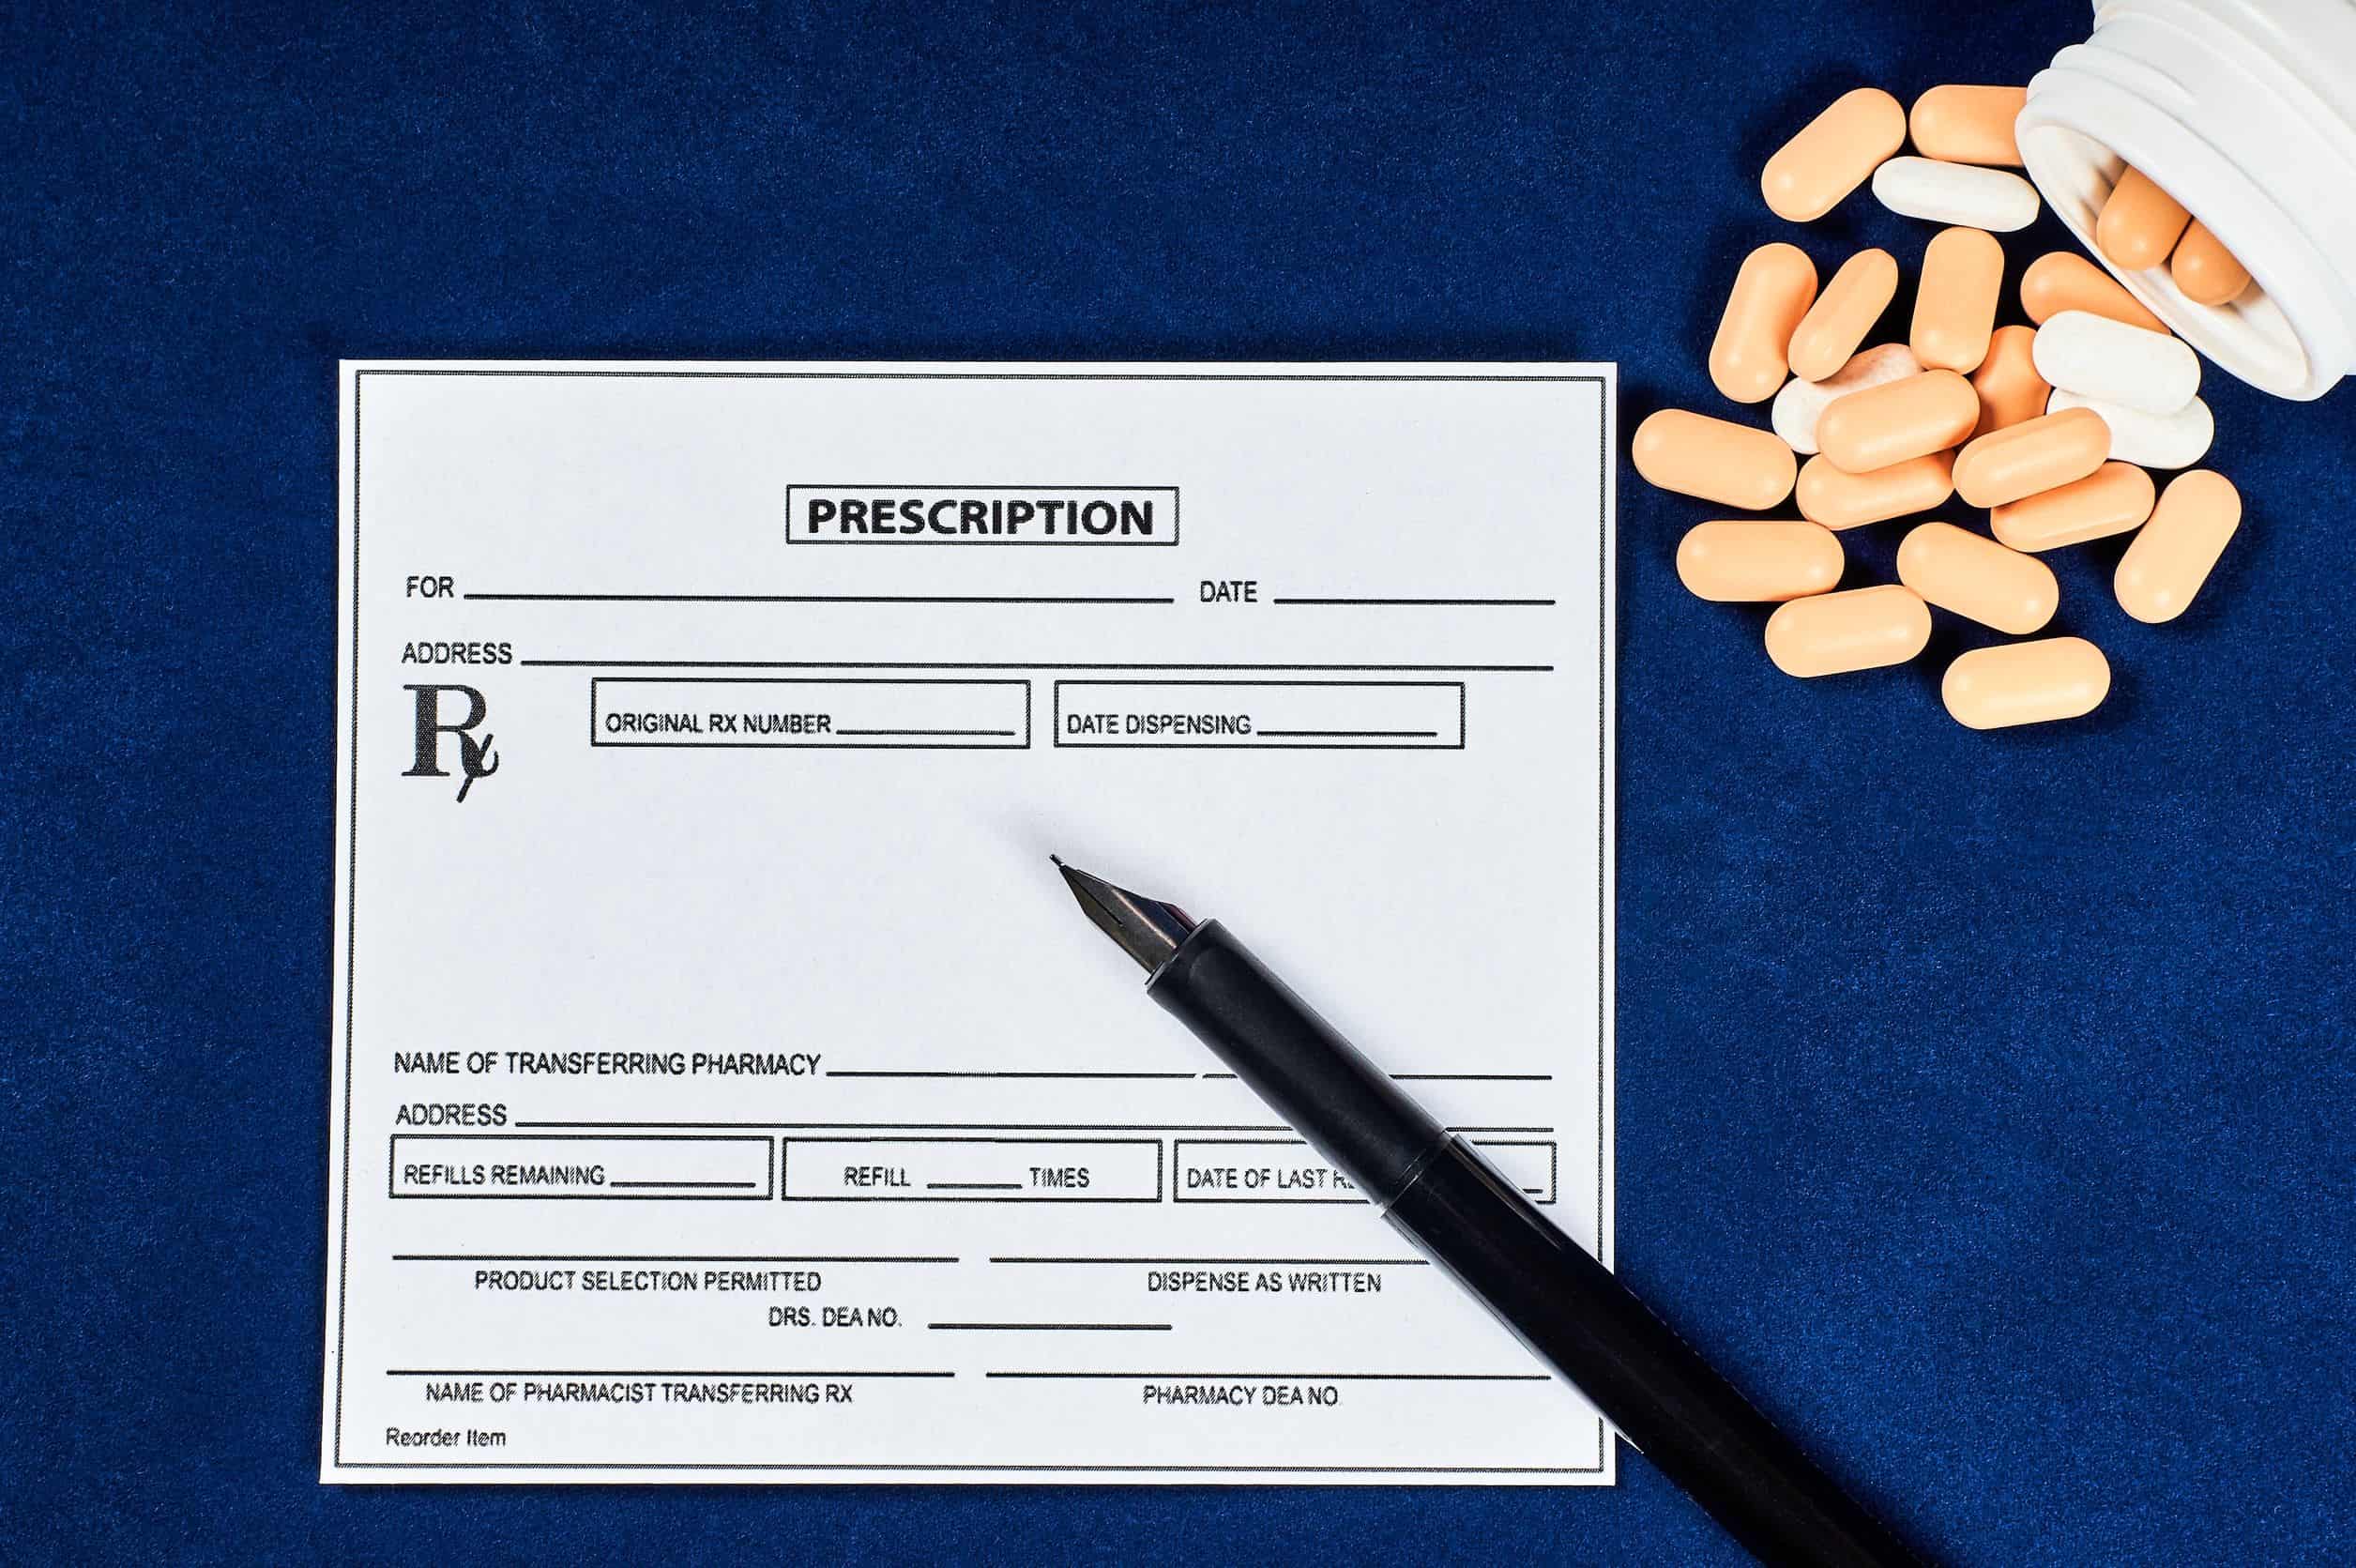 Prescription Refill Rules, Exceptions, Emergencies, and Limits